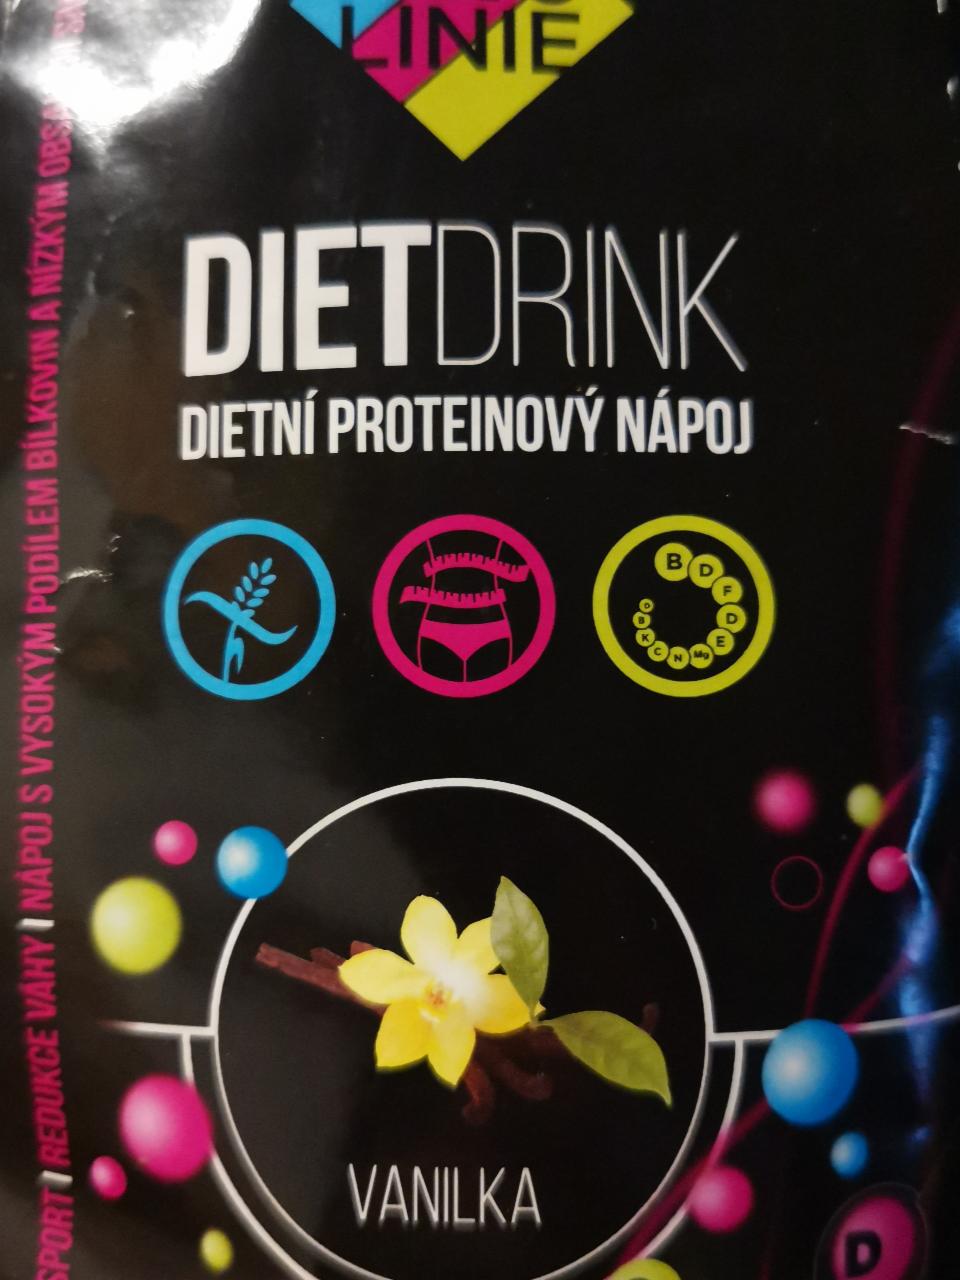 Fotografie - Protein Diet Drink Vanilka KetoLinie